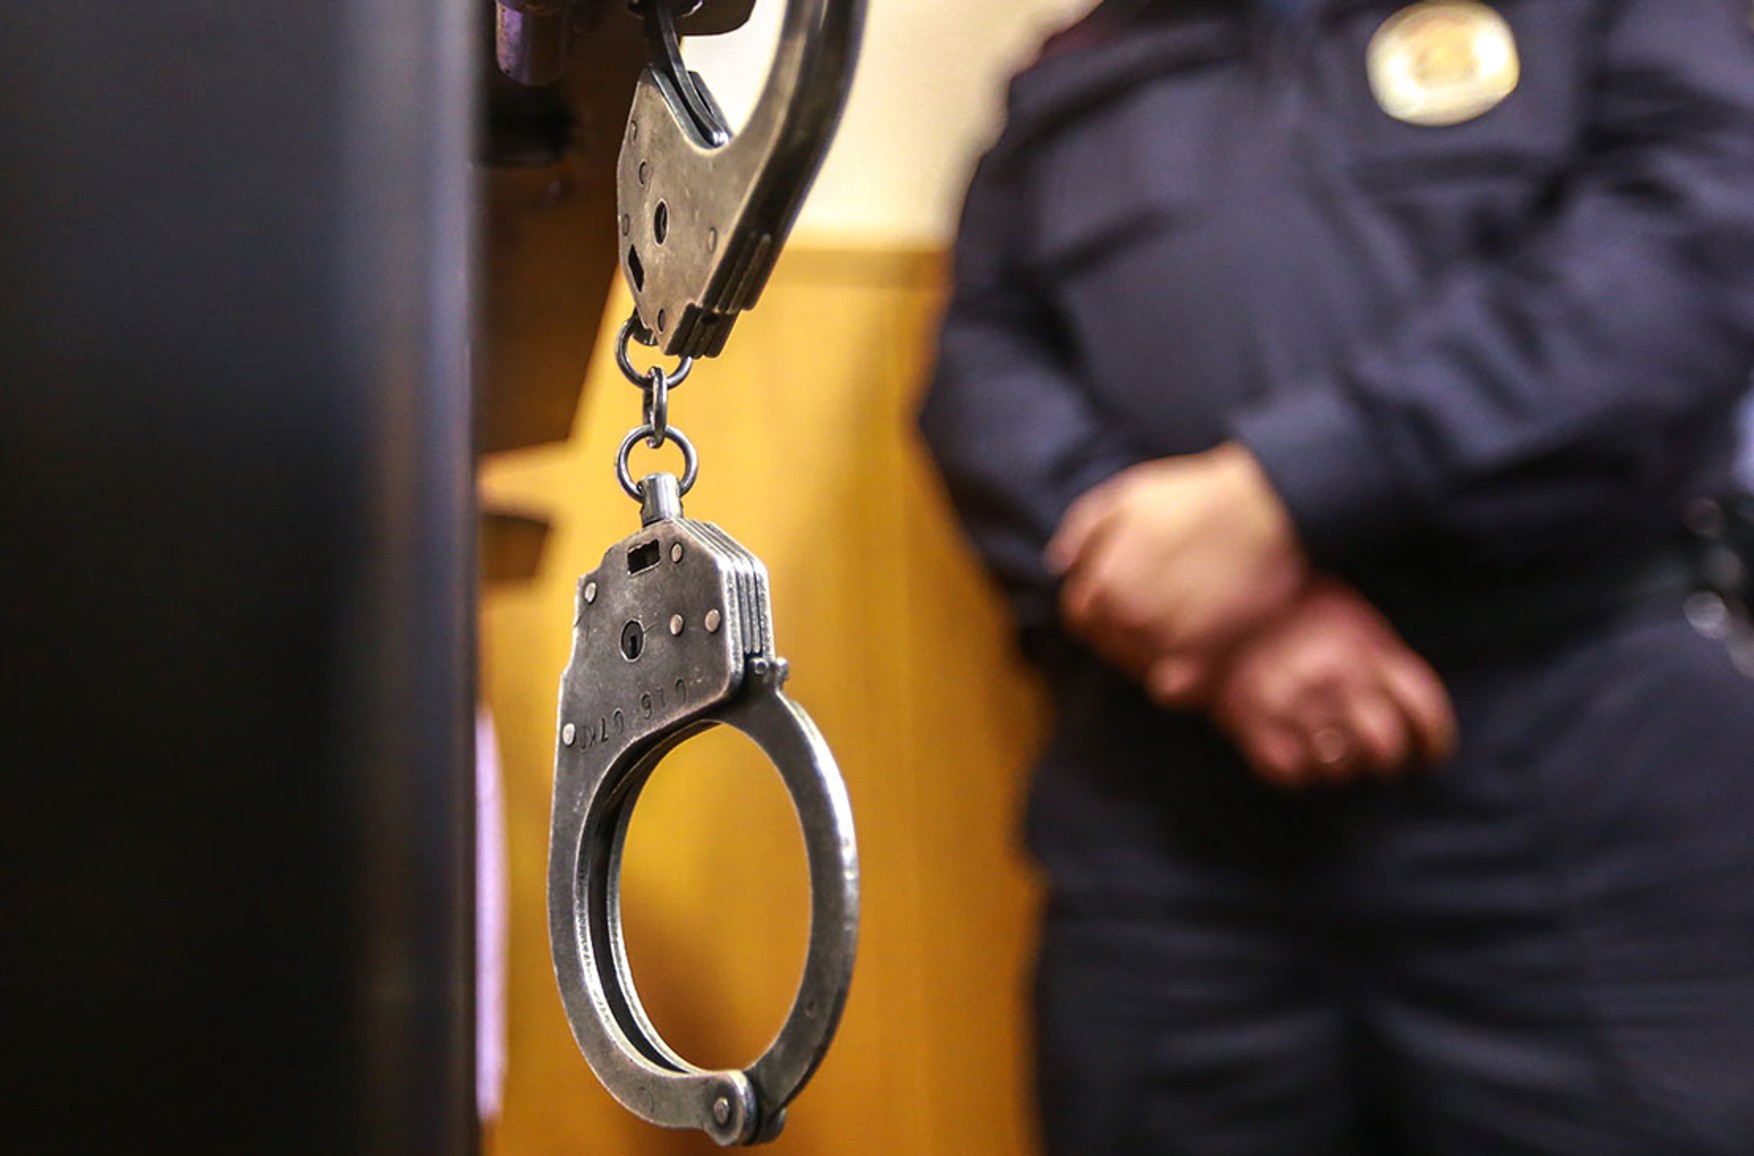 ФСБ затримала двох осіб у справі про передачу Естонії держтаємниці, один з них військовий